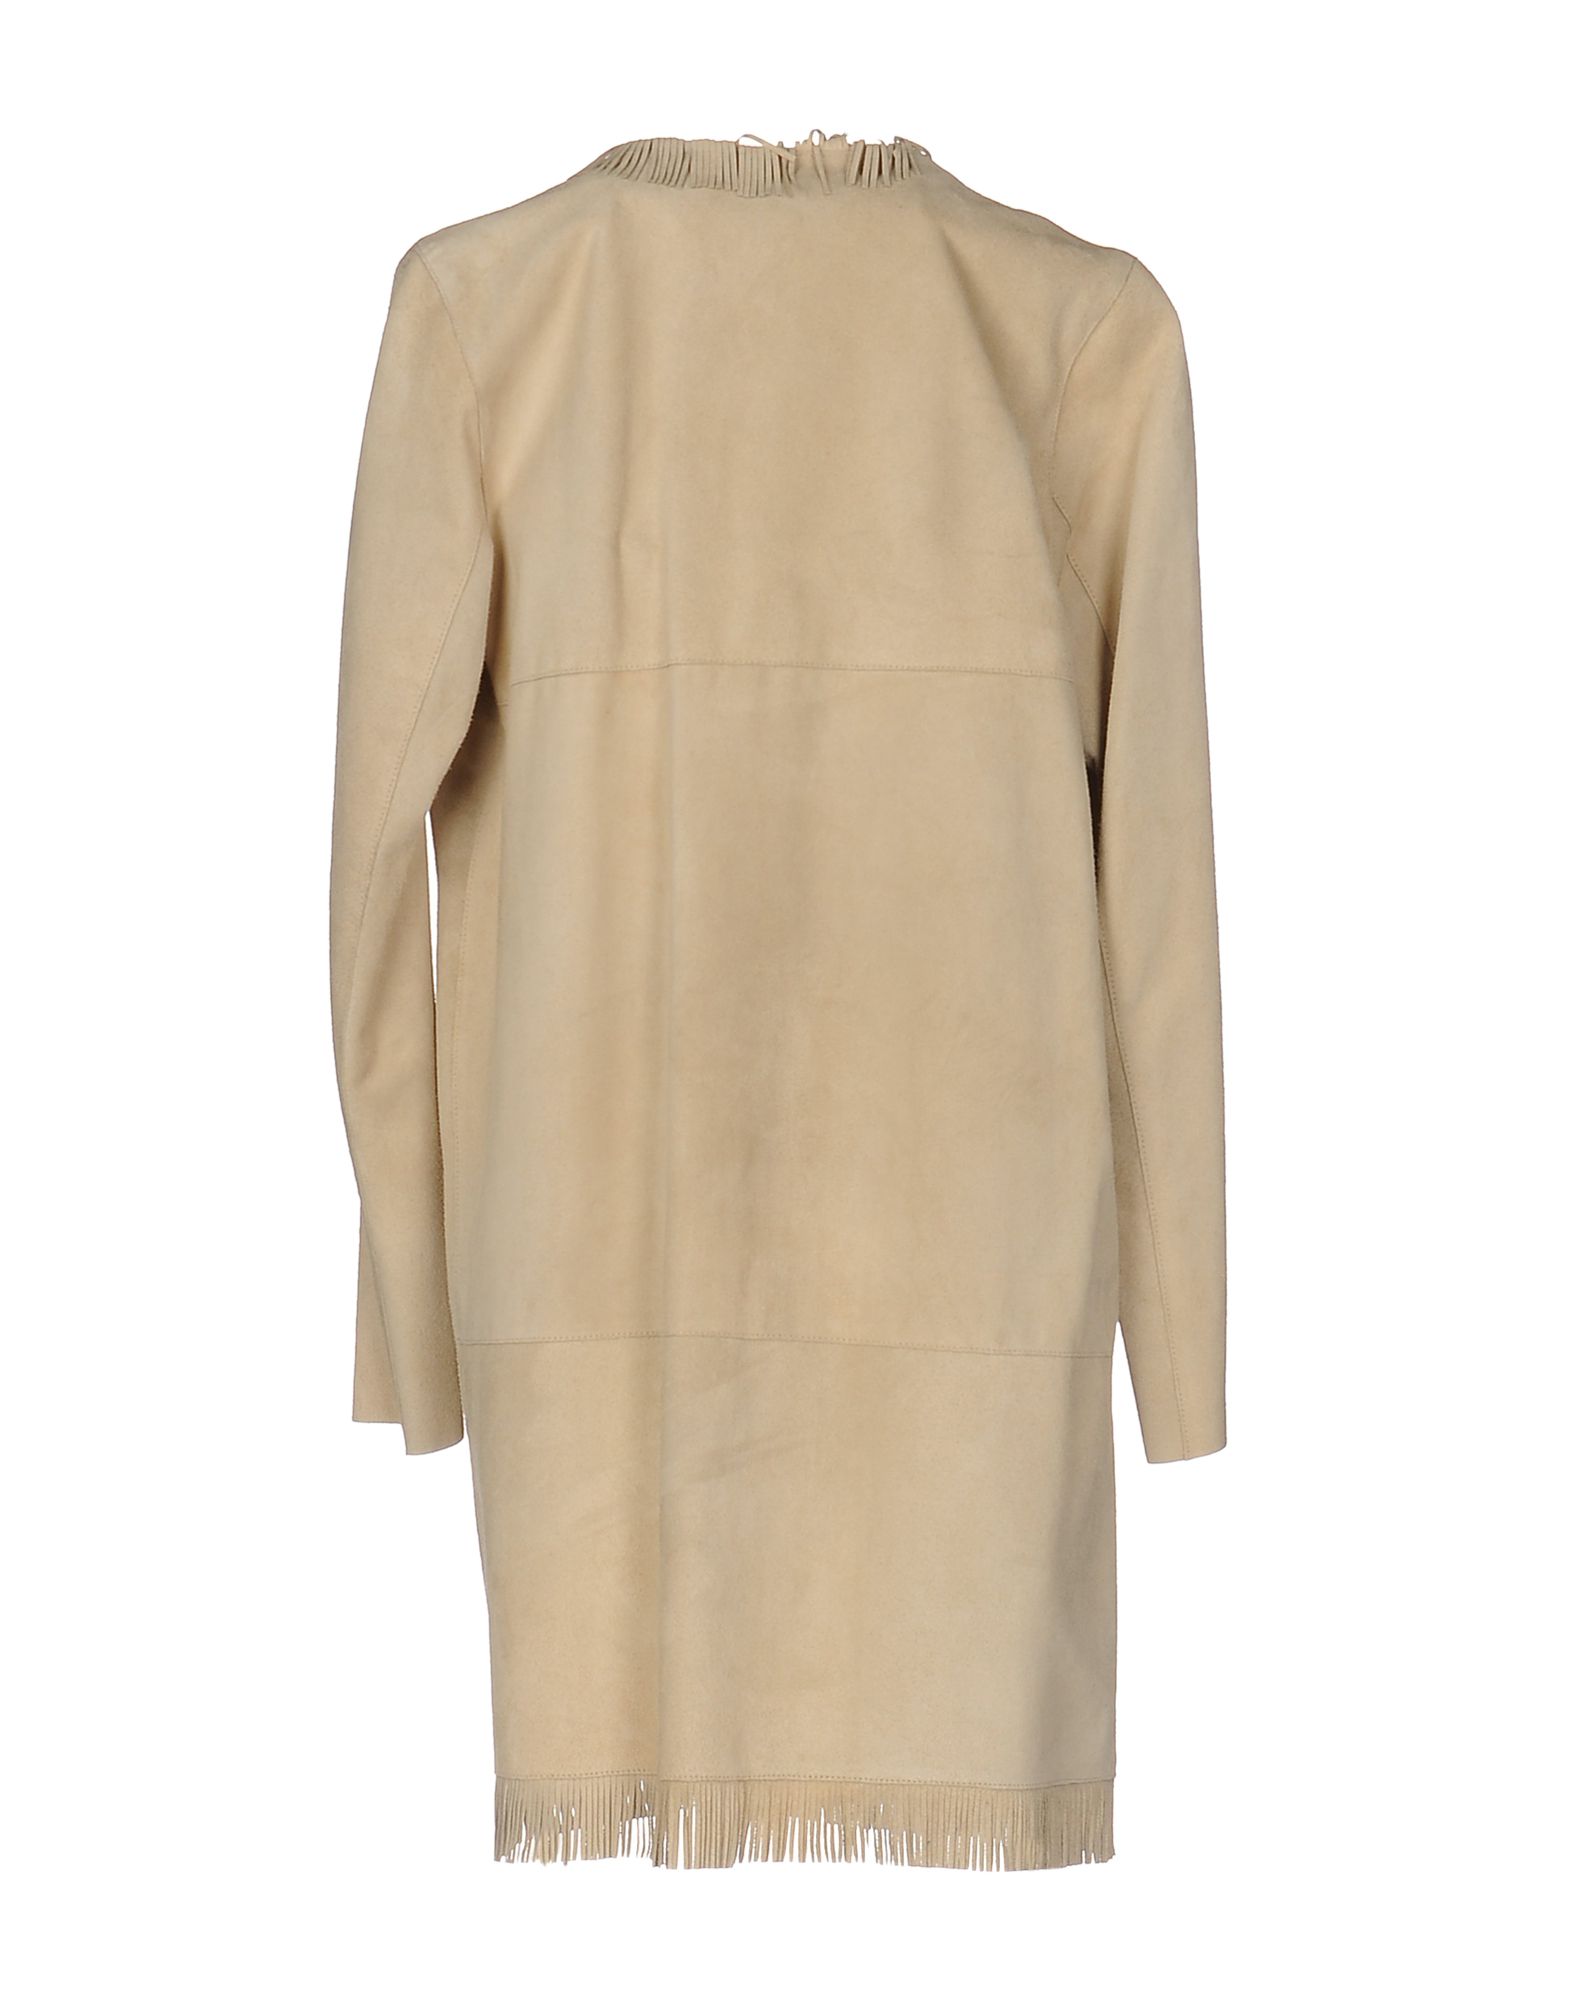 Необычное пальто из верблюжьей шерсти  одетое на модель